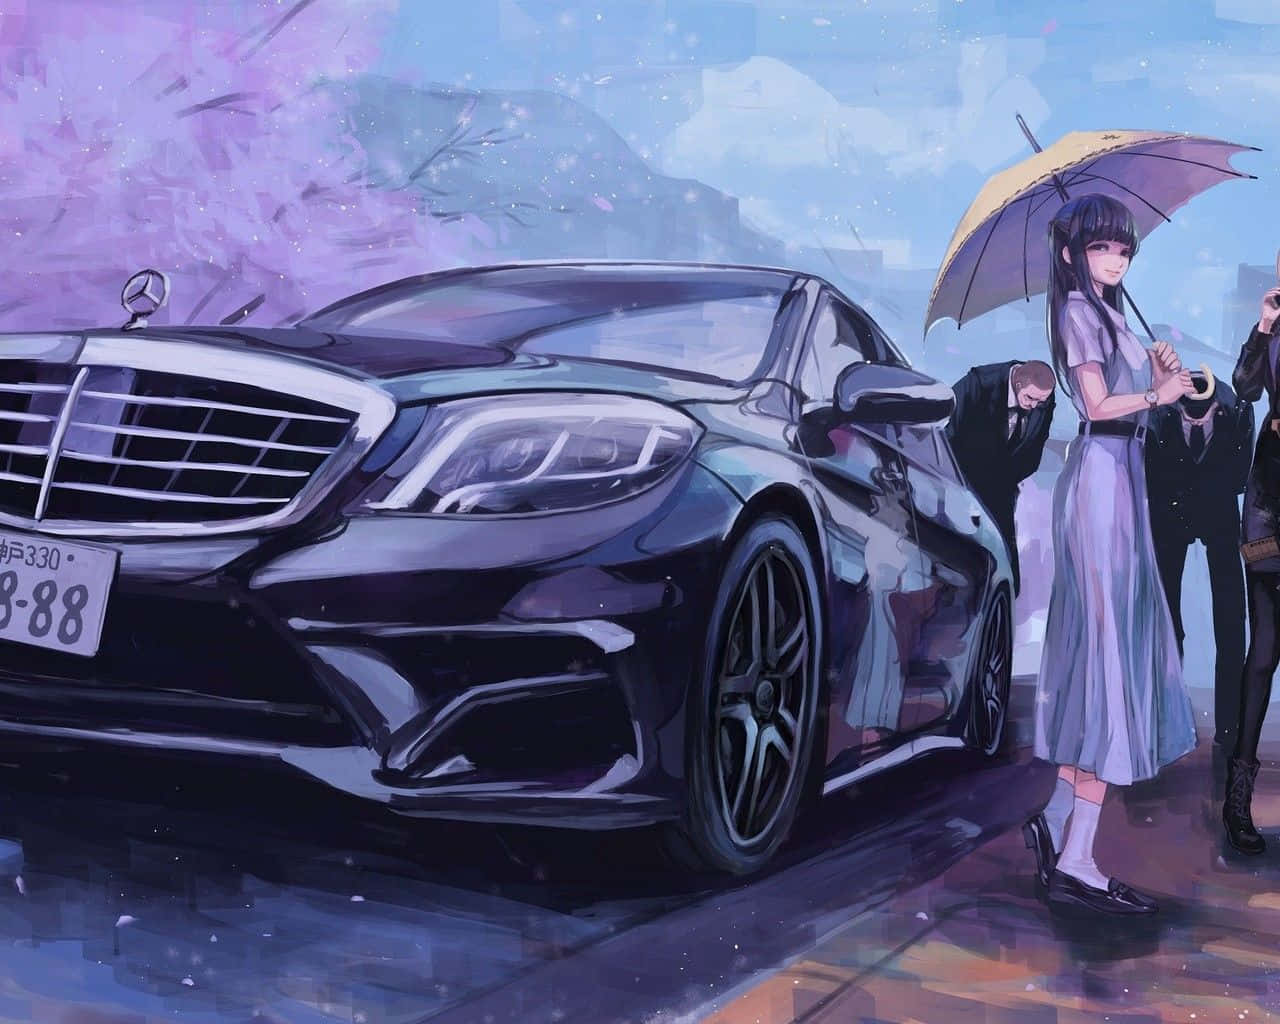 Attnjuta Av Vägen Framför Mig I Min Anime-inspirerade Bil